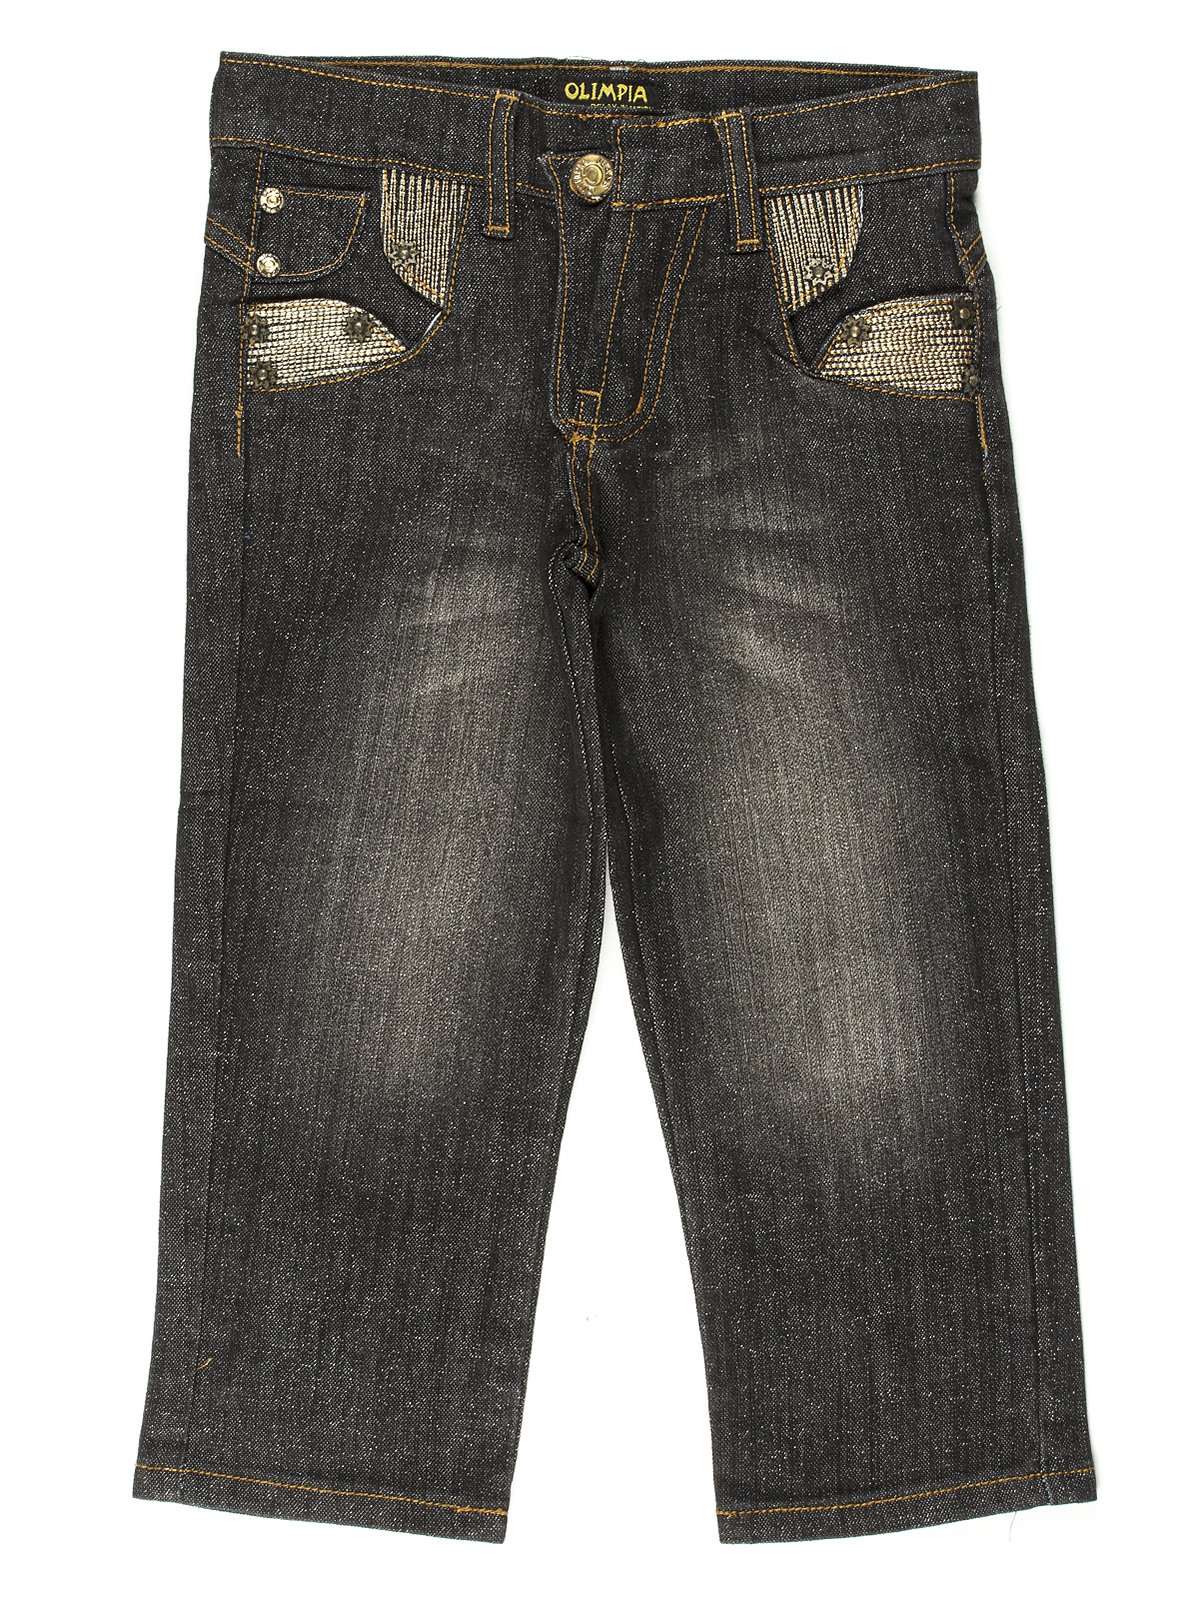 Капрі чорні джинсові | 649111